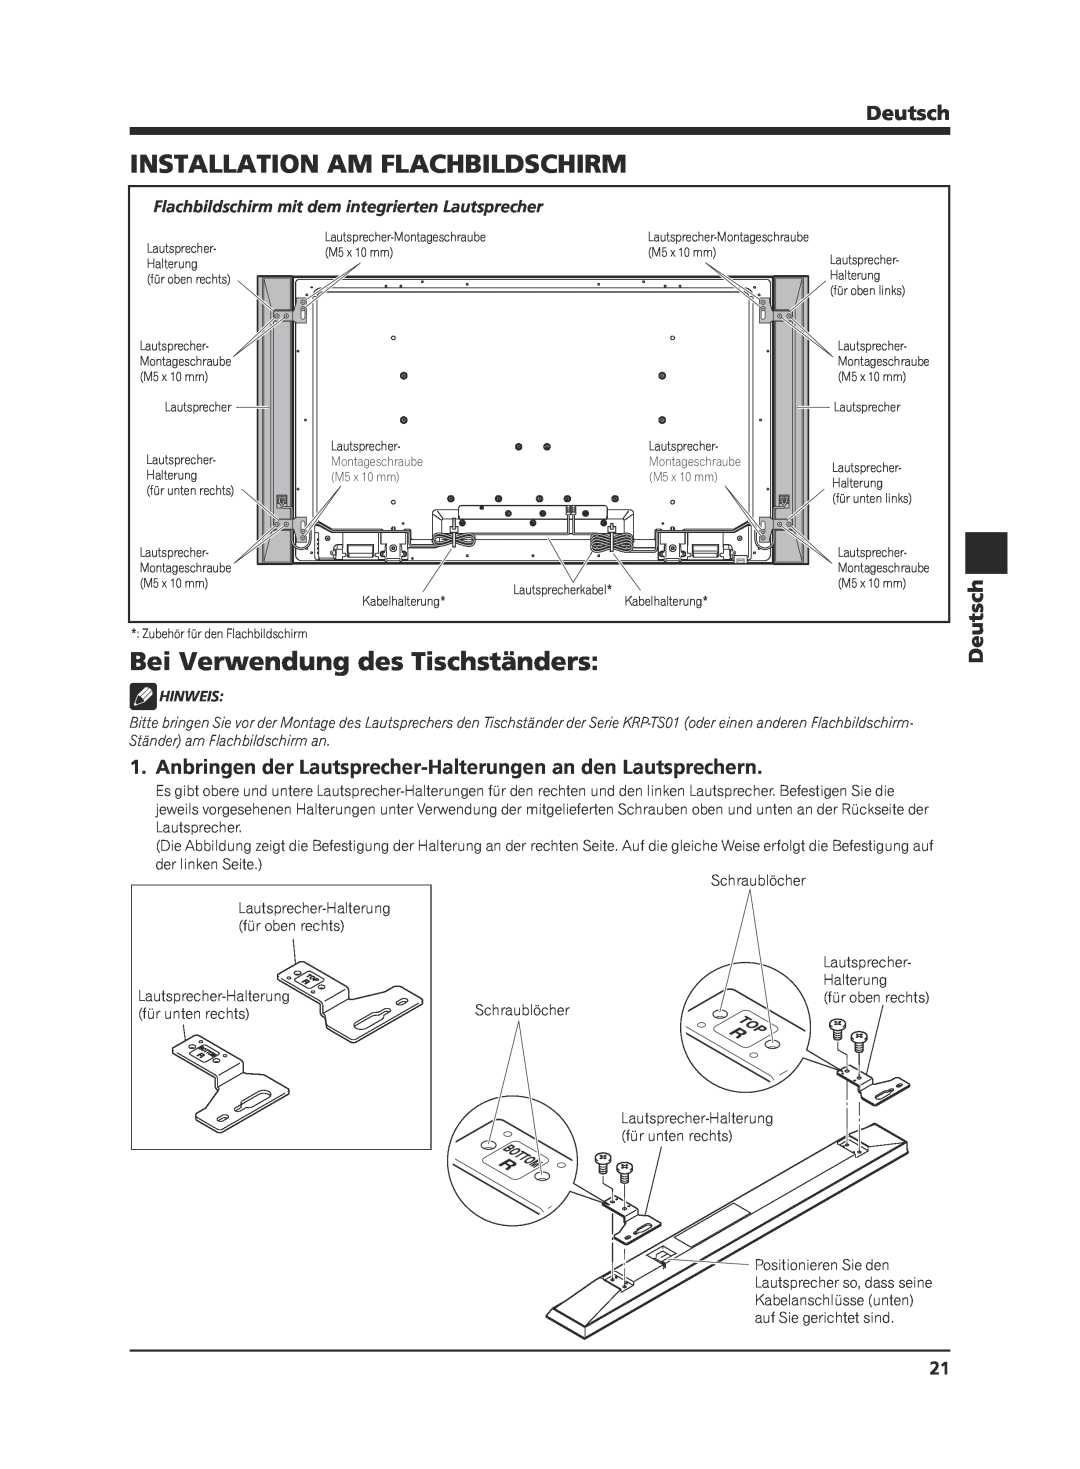 Pioneer KRP-S02 manual Installation Am Flachbildschirm, Bei Verwendung des Tischständers, Deutsch, Hinweis 